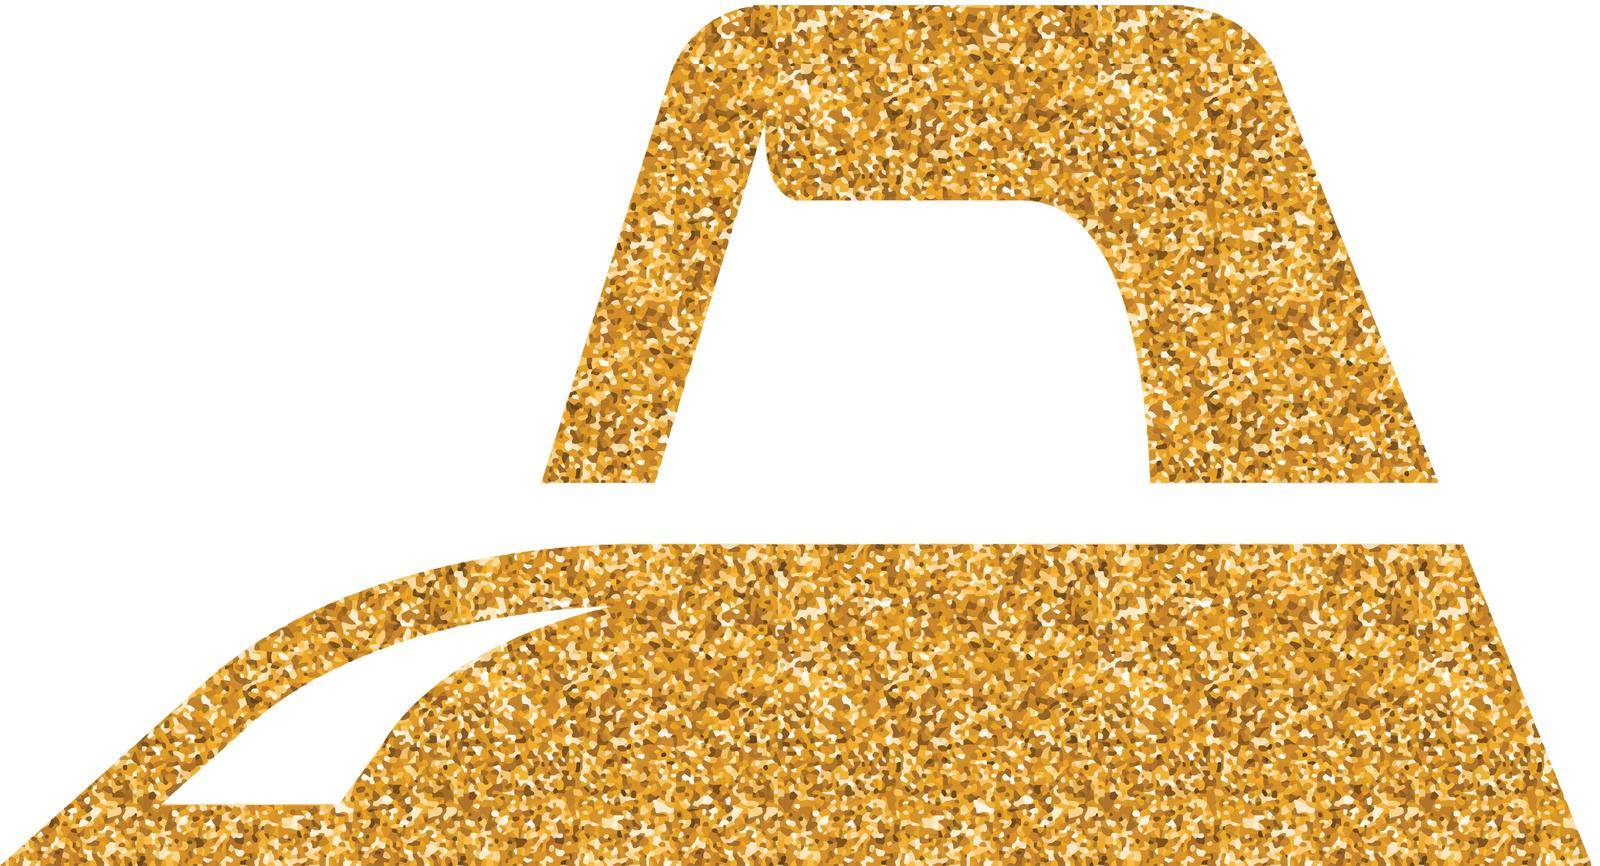 Iron icon in gold glitter texture. Sparkle luxury style vector illustration.